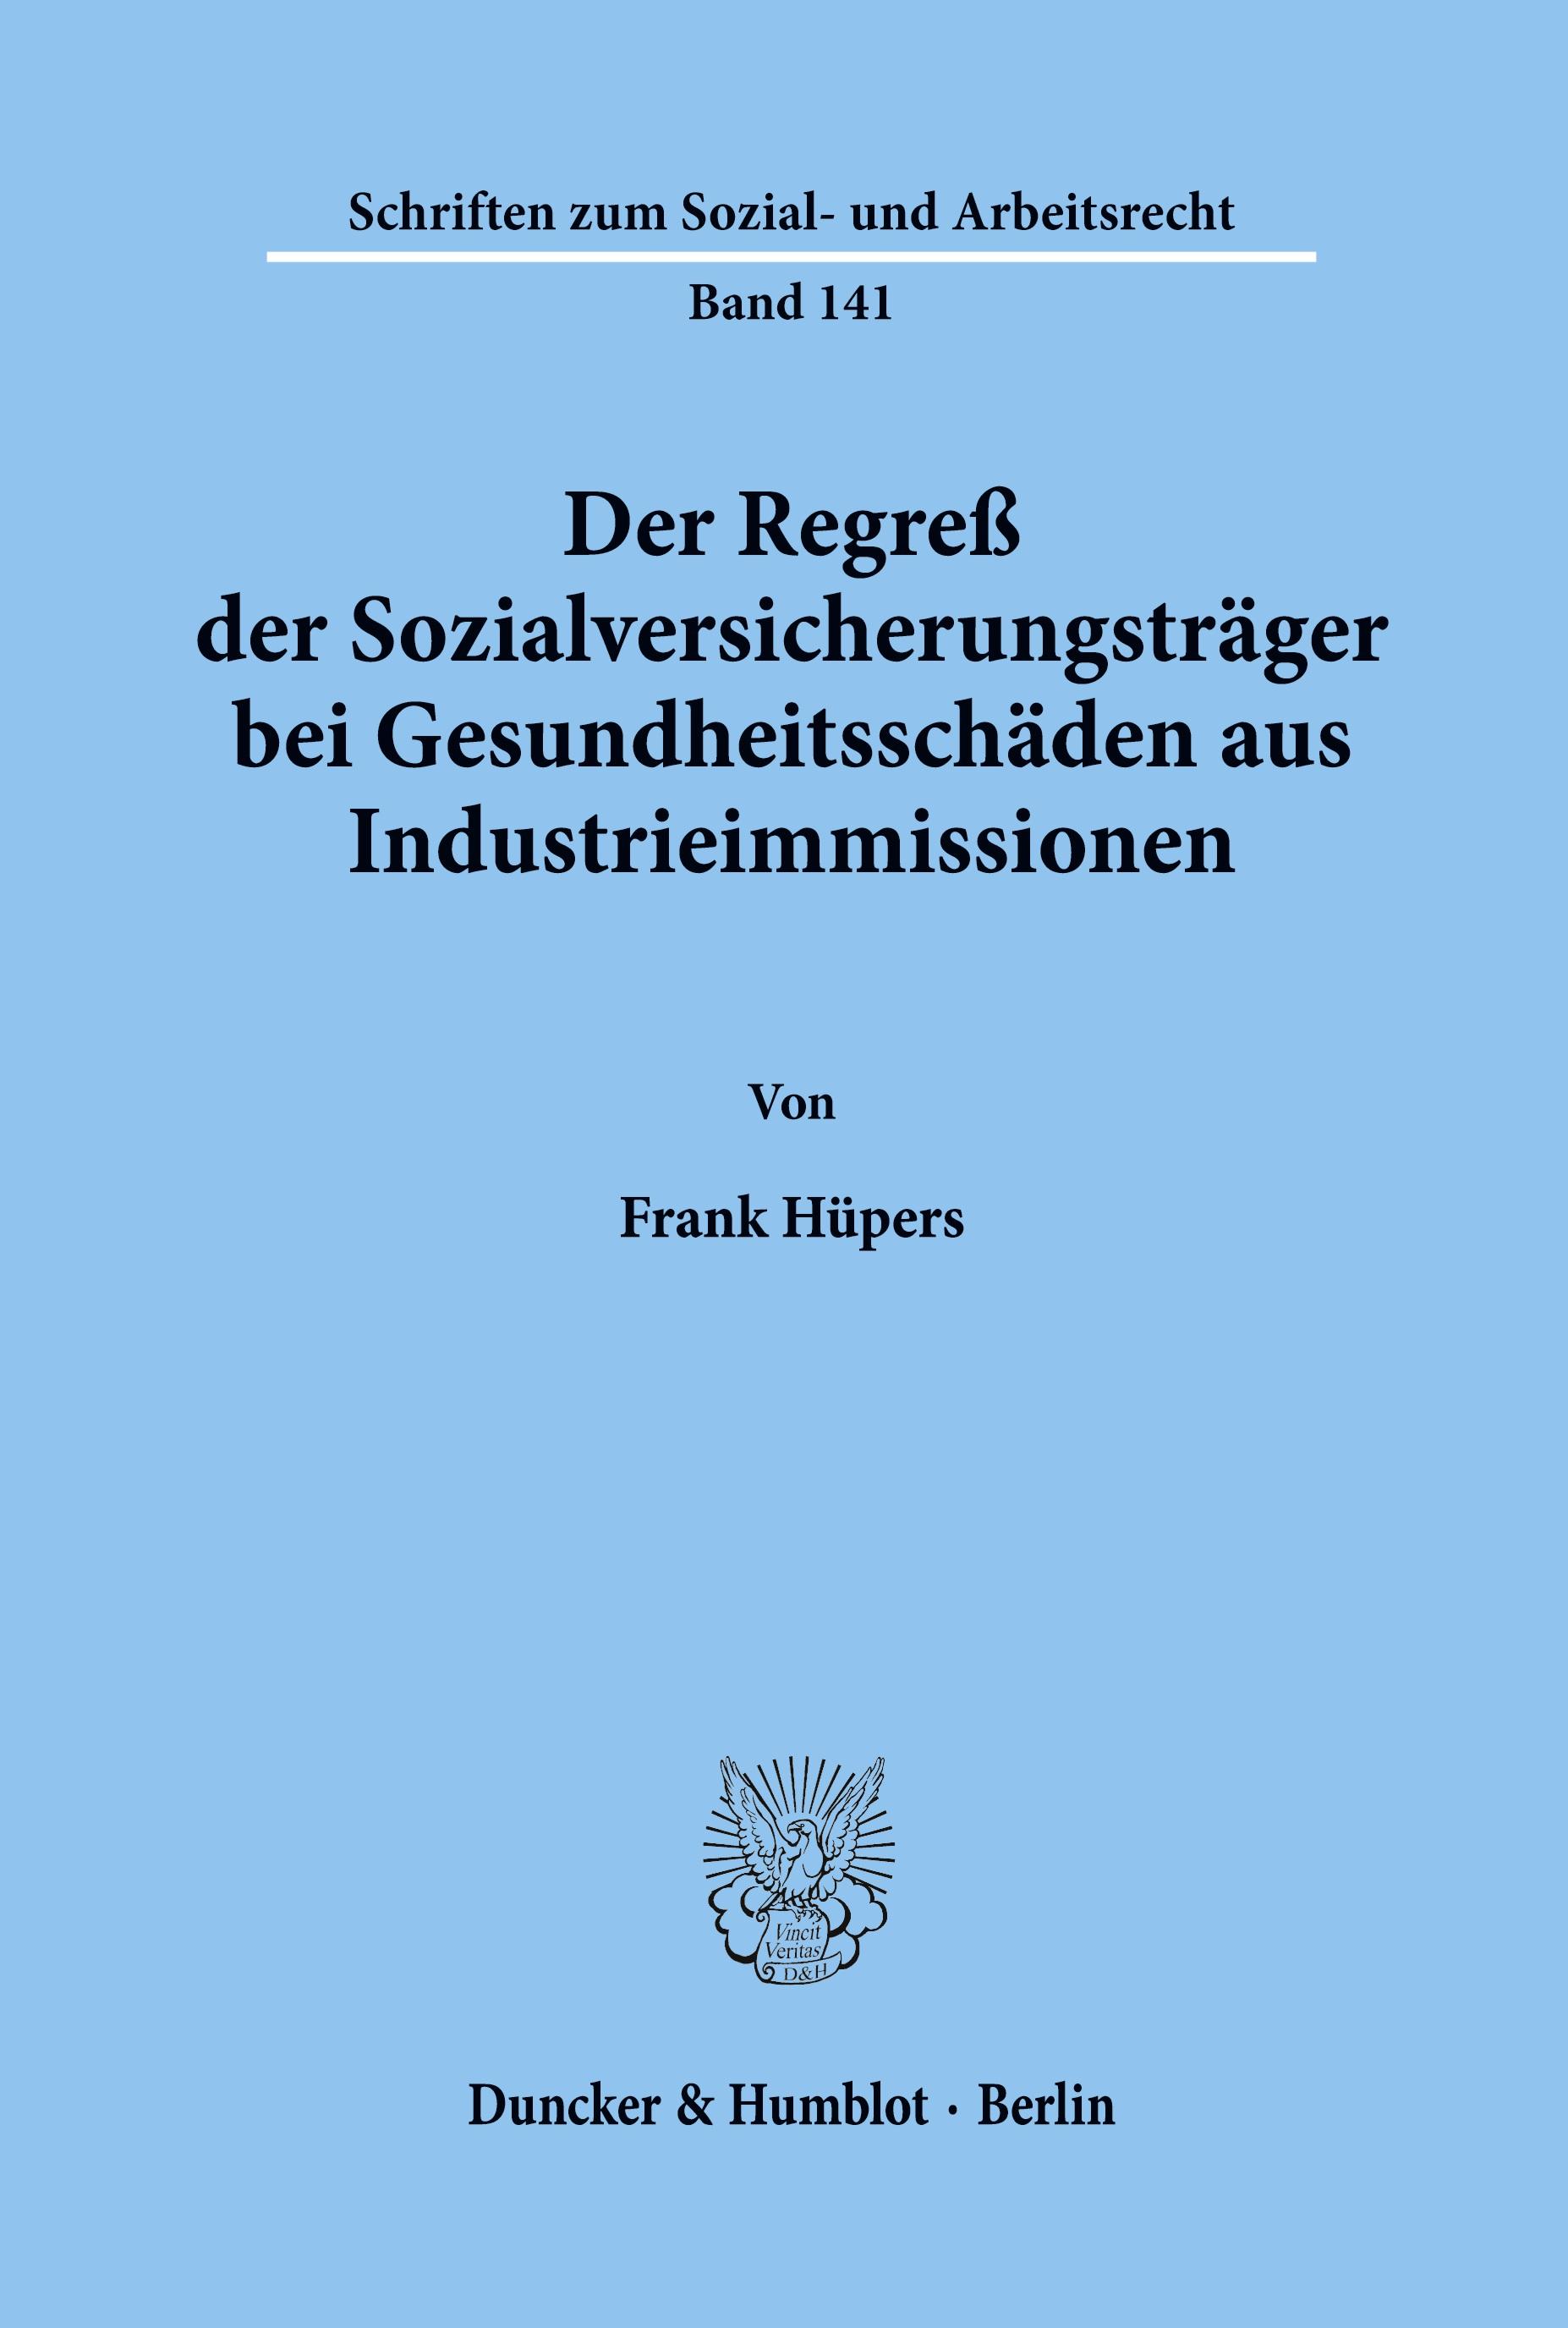 Der Regress der Sozialversicherungstraeger bei Gesundheitsschaeden aus Industrieimmissionen. - Frank HÃ¼pers